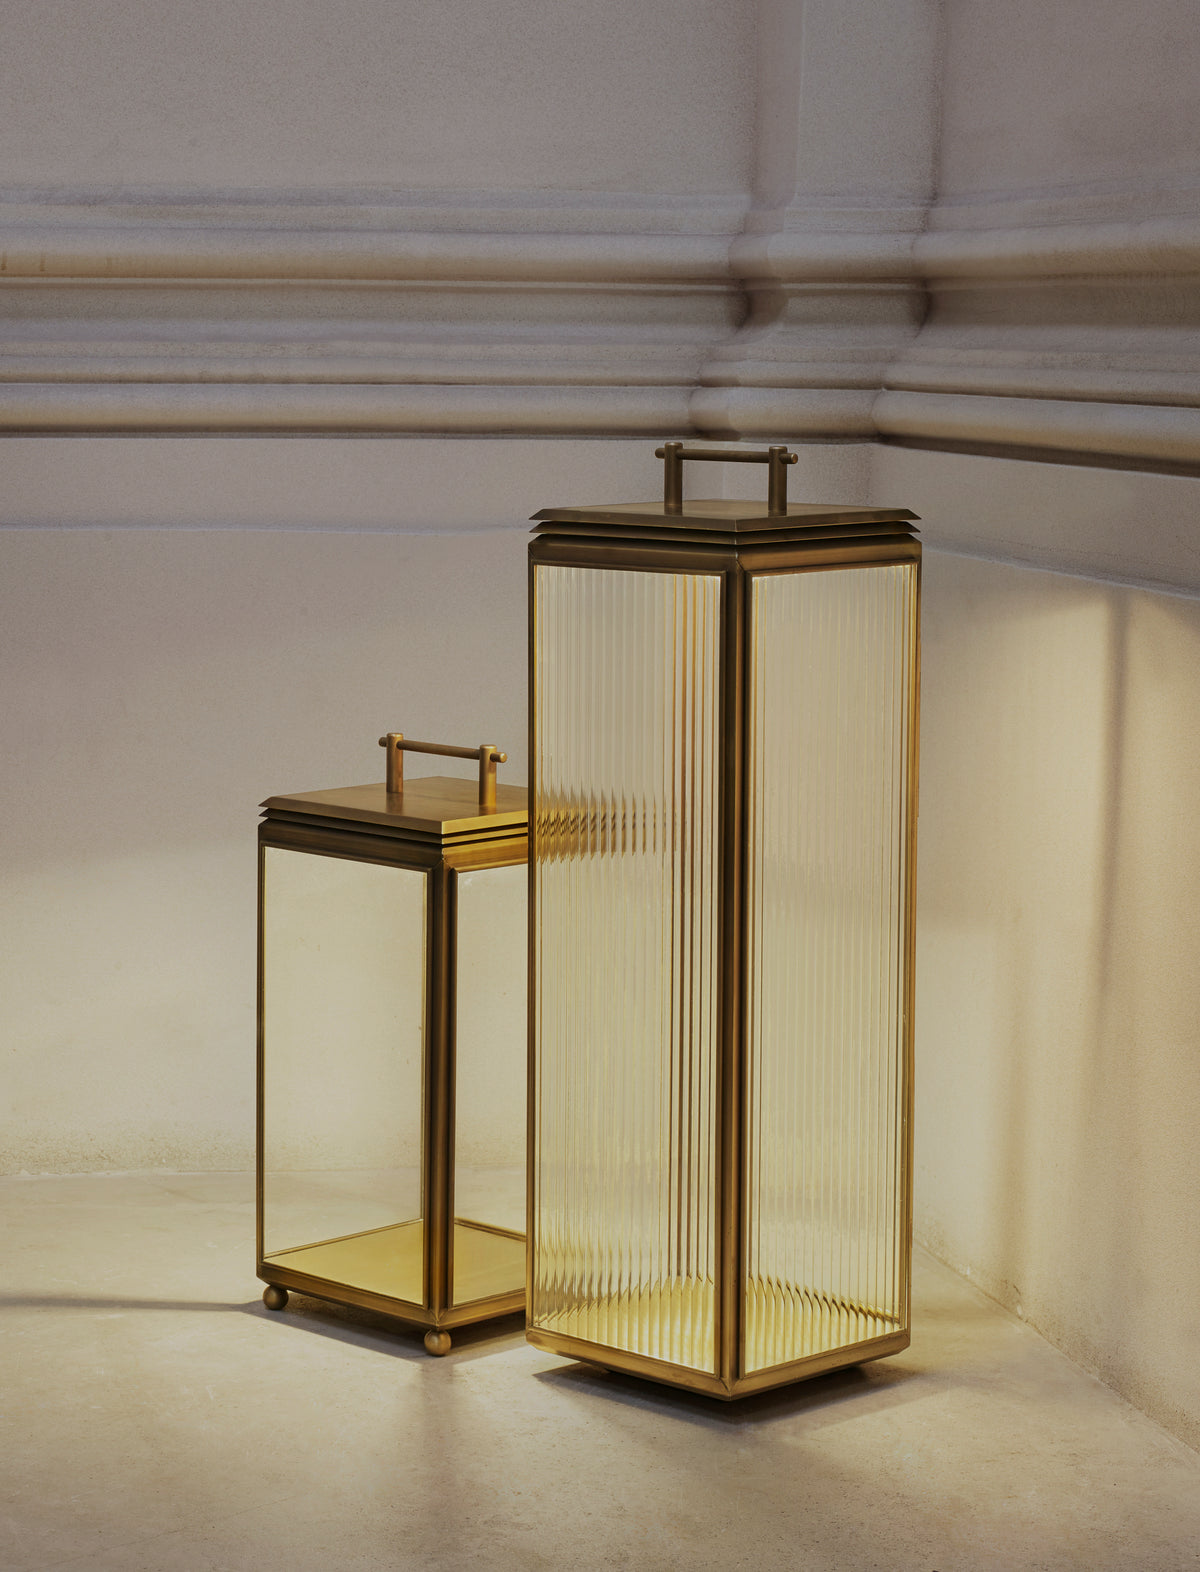 J Adams Hazel Floor Lantern Light in antique brass with clear glass